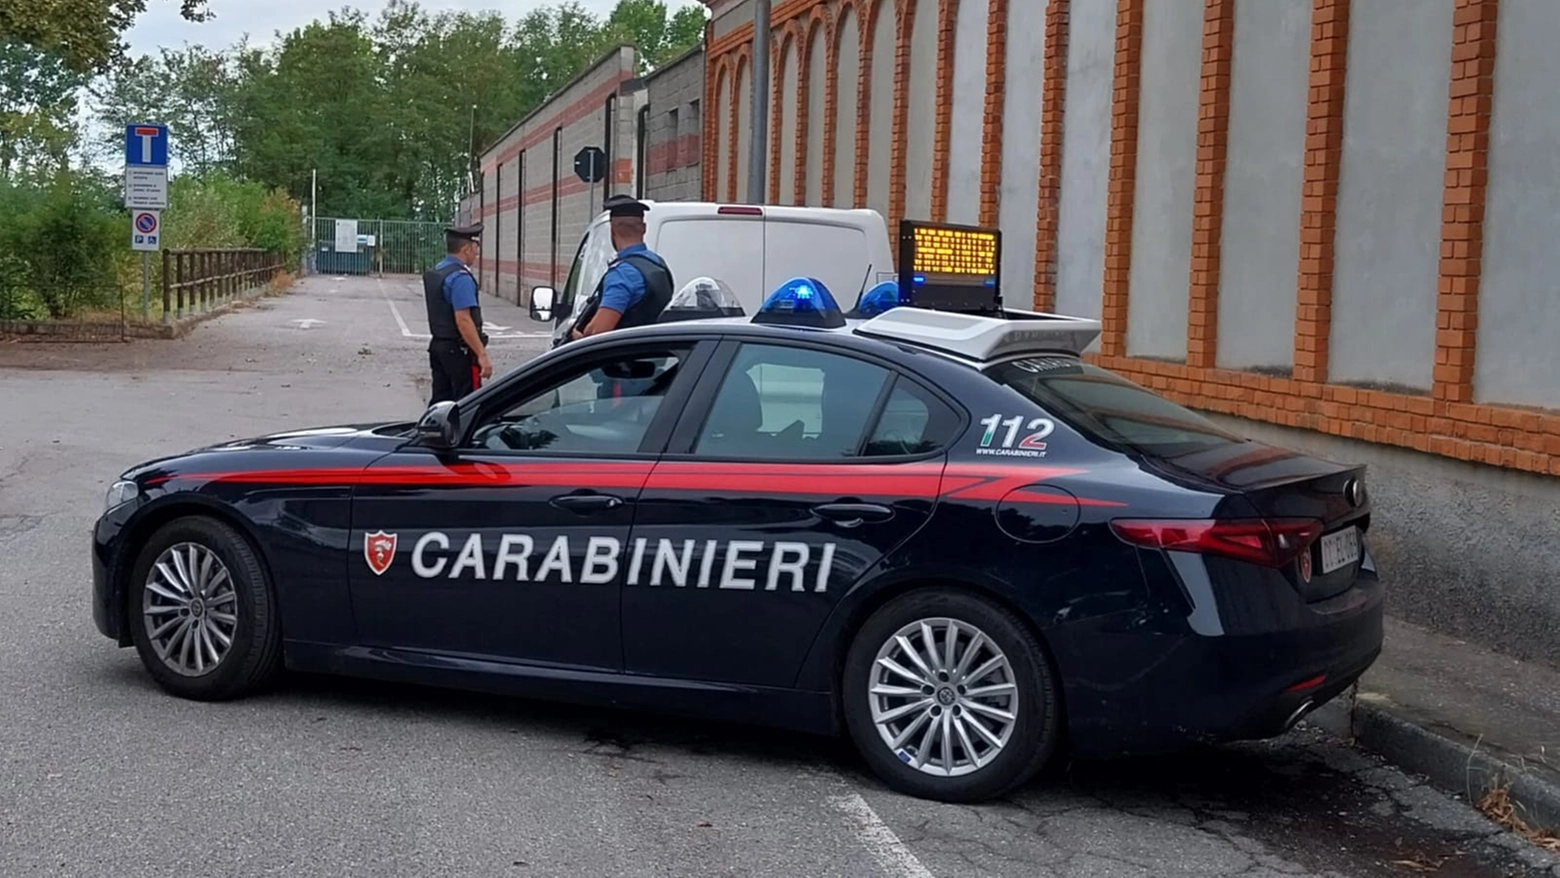 Posto di blocco dei carabinieri (foto di repertorio)